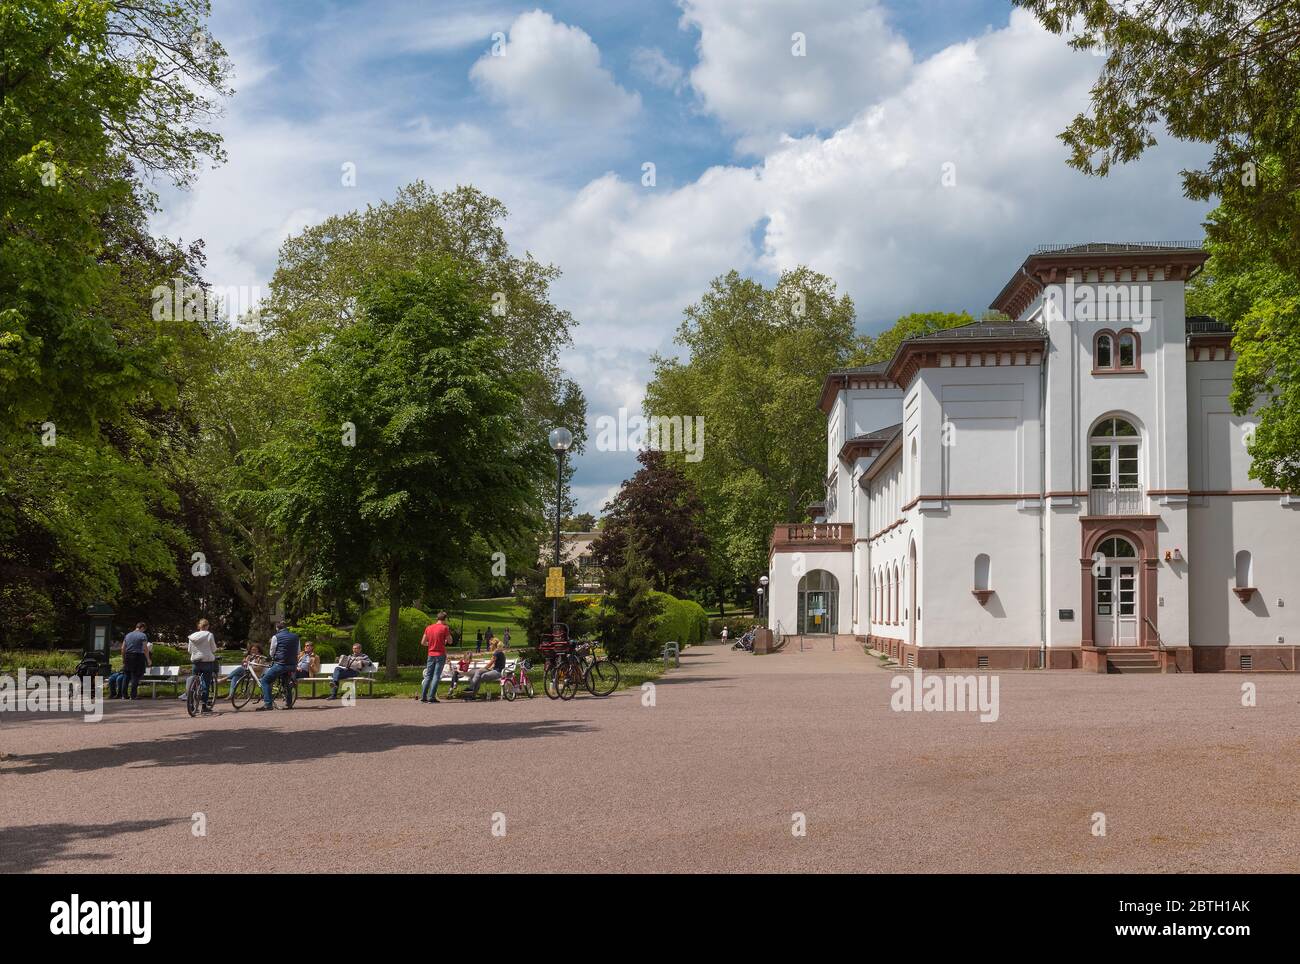 Historisches Badehaus mit Park in Bad Soden, Deutschland Stockfoto